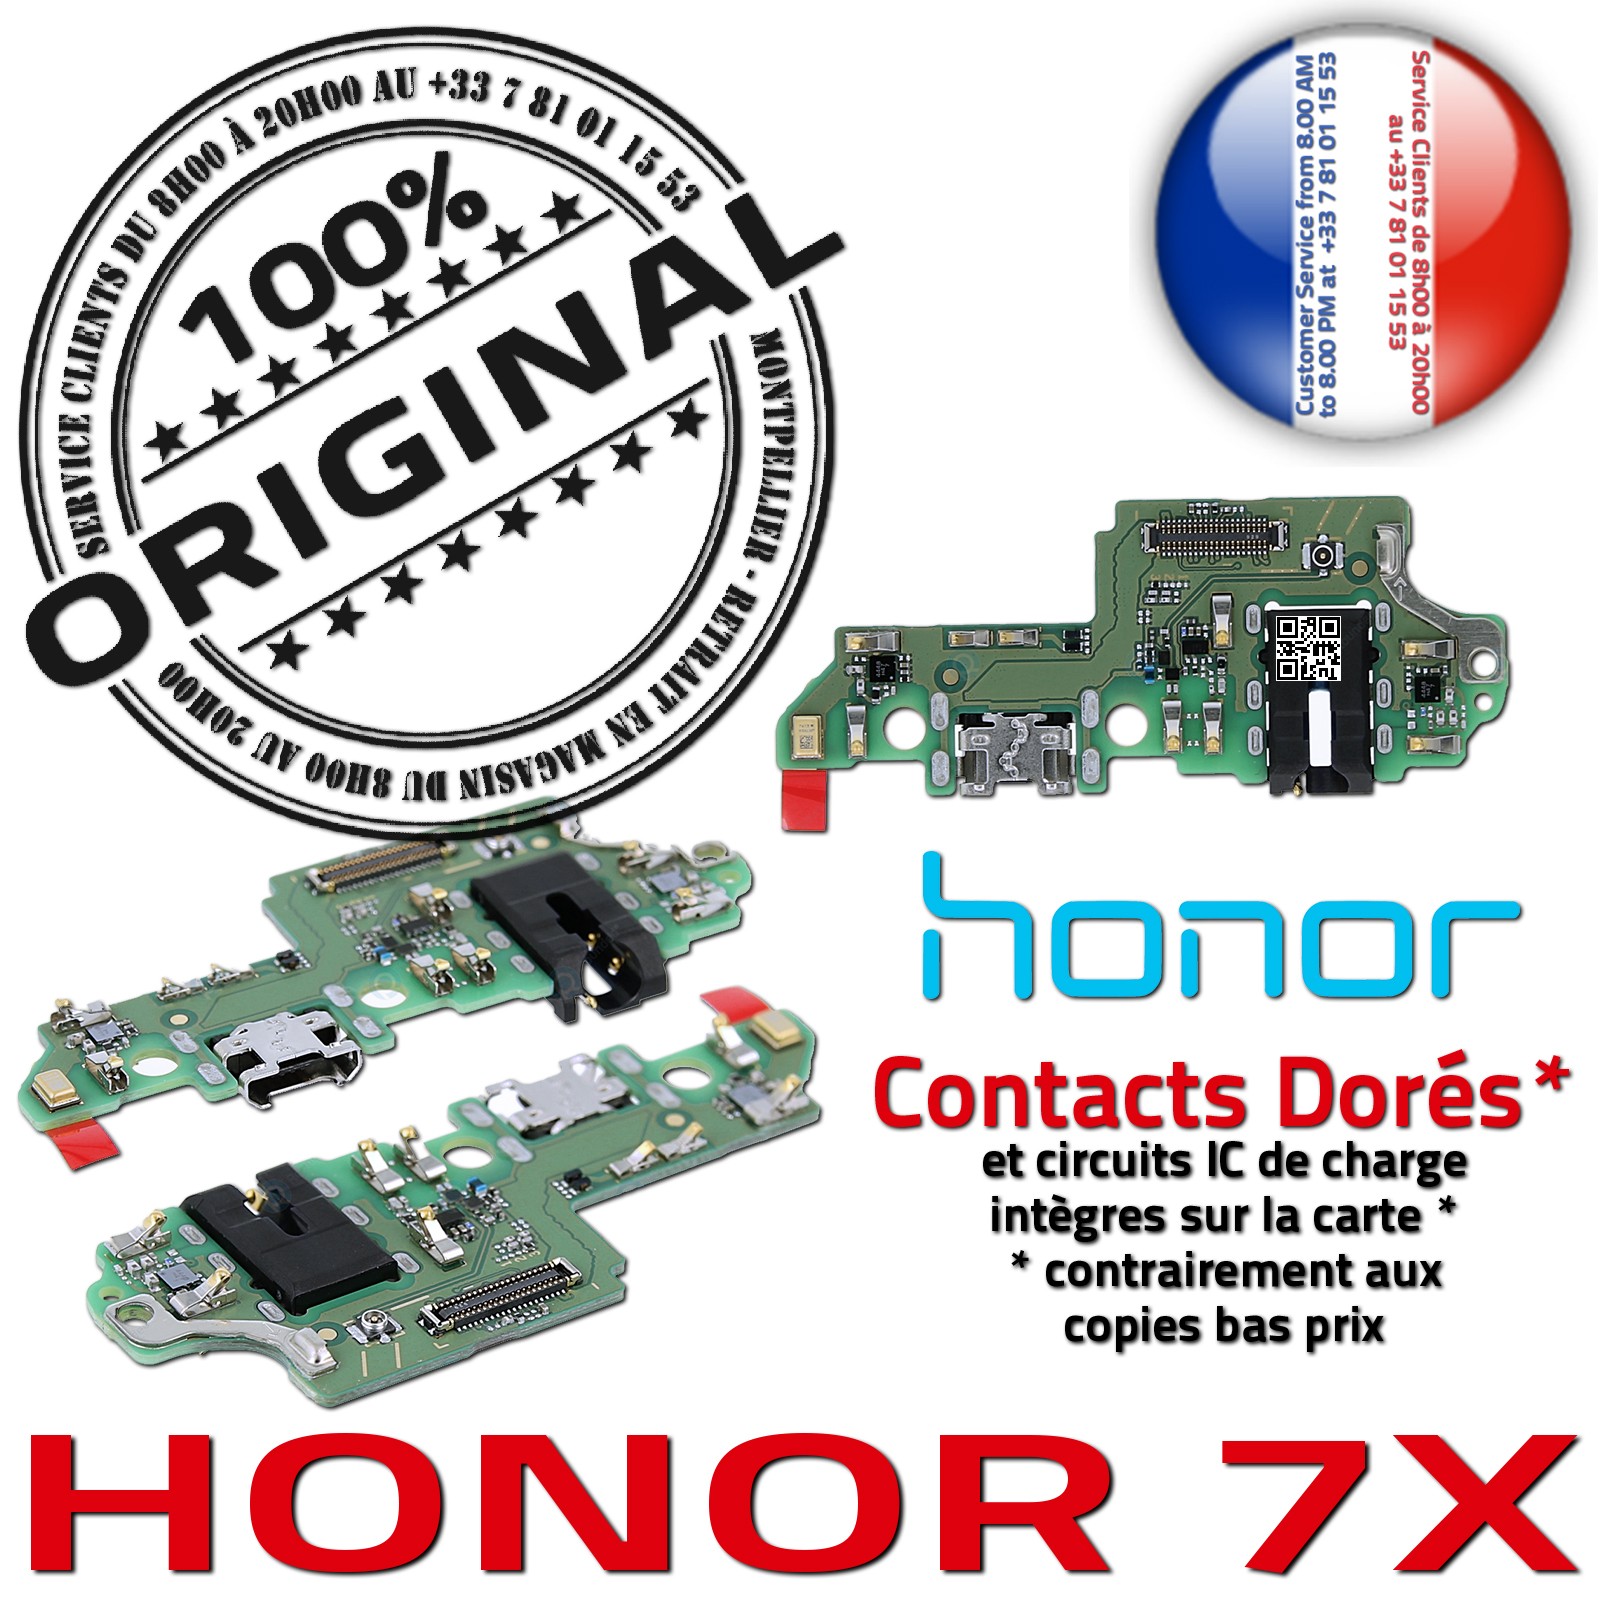 Honor 7X Connecteur de Charge ORIGINAL Prise Chargeur Micro USB Nappe OFFICIELLE Qualité Microphone Antenne RESEAU Câble JACK